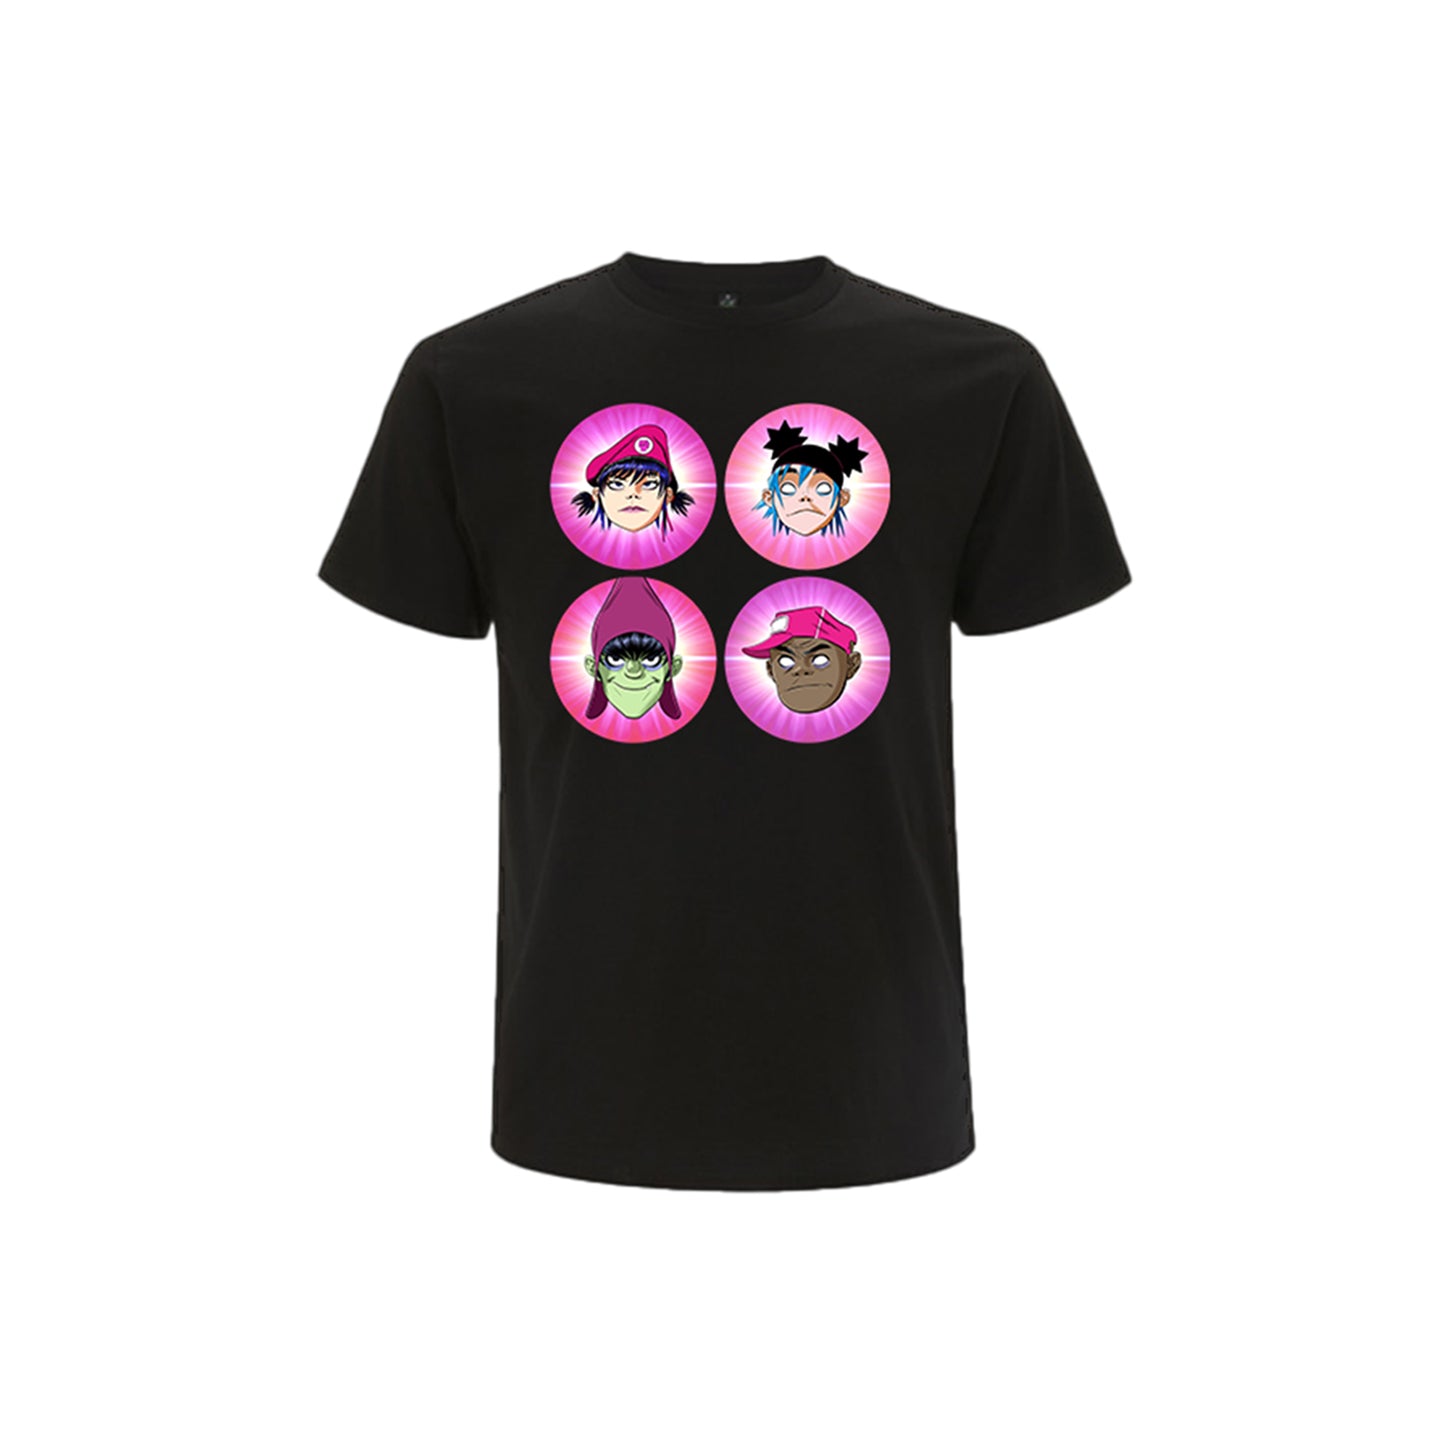 Cracker Island Character T-Shirt – Gorillaz